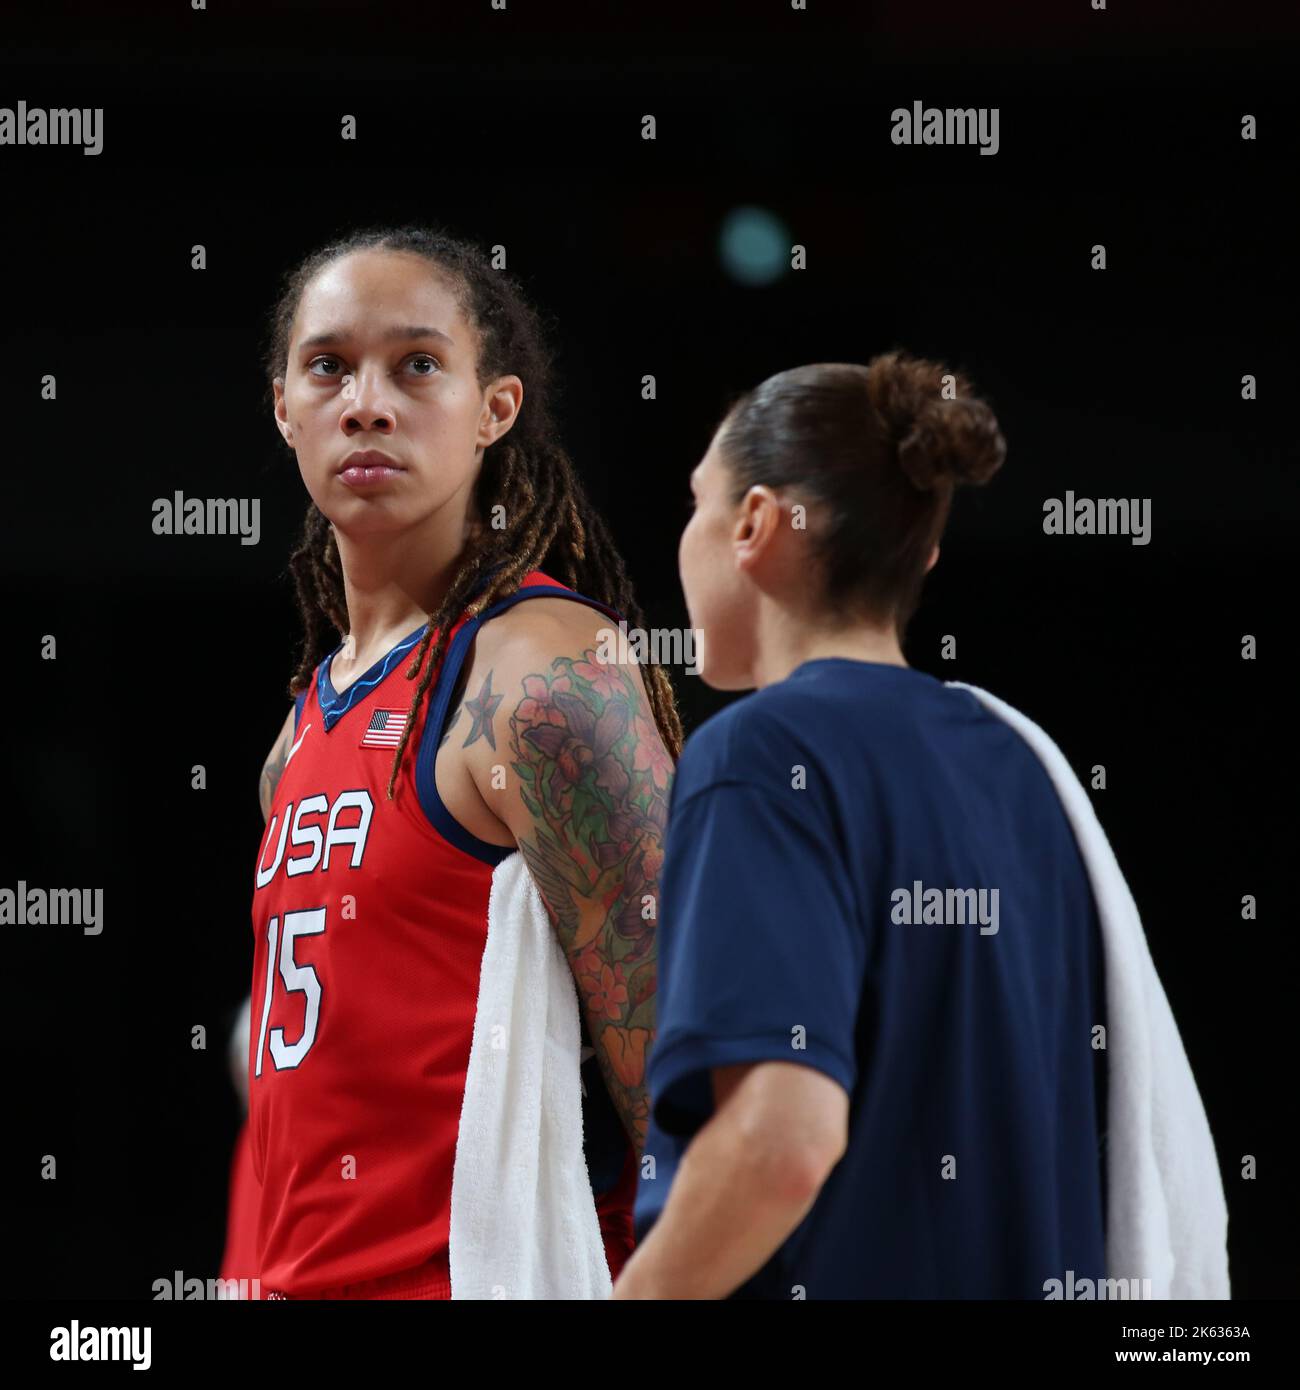 Photos: WNBA star Brittney Griner